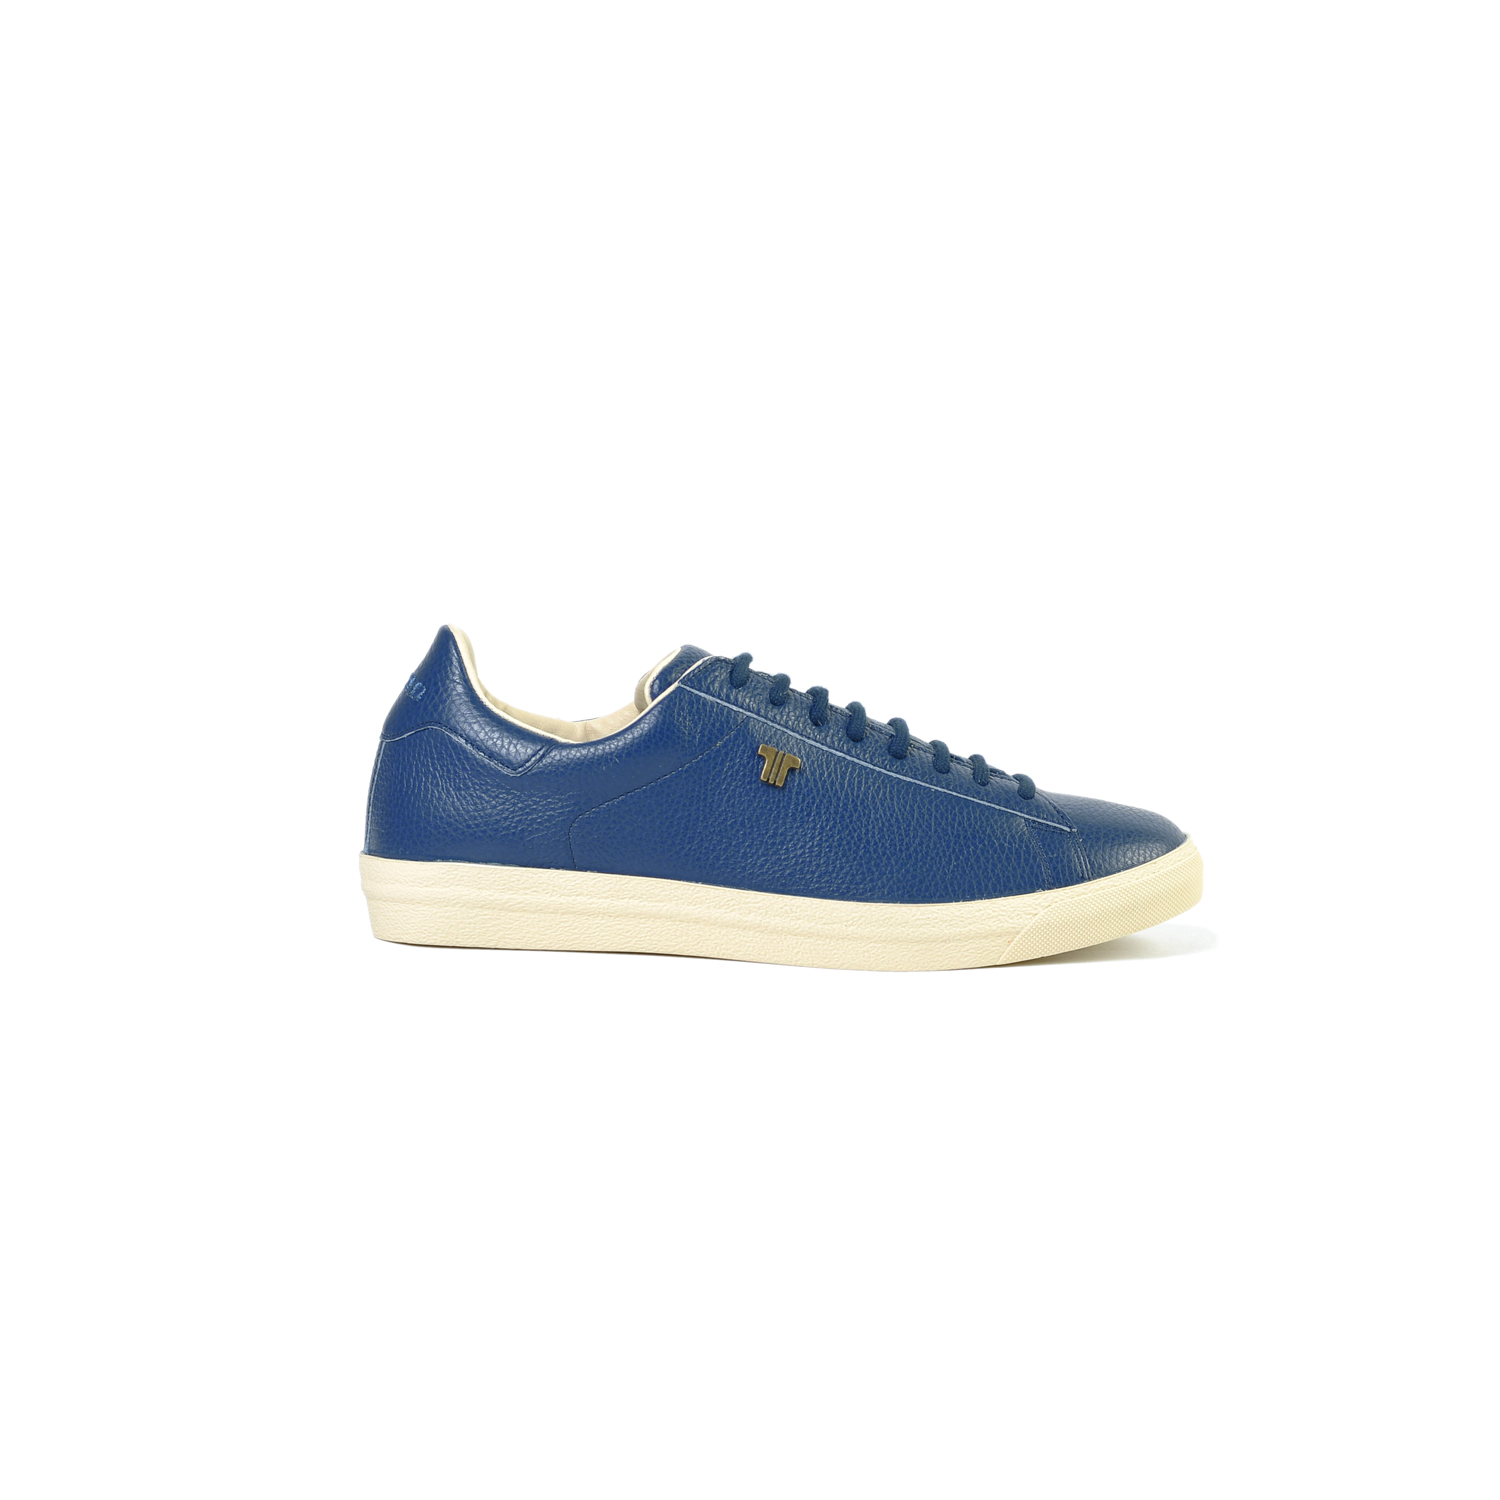 Tisza shoes - Simple - Blue